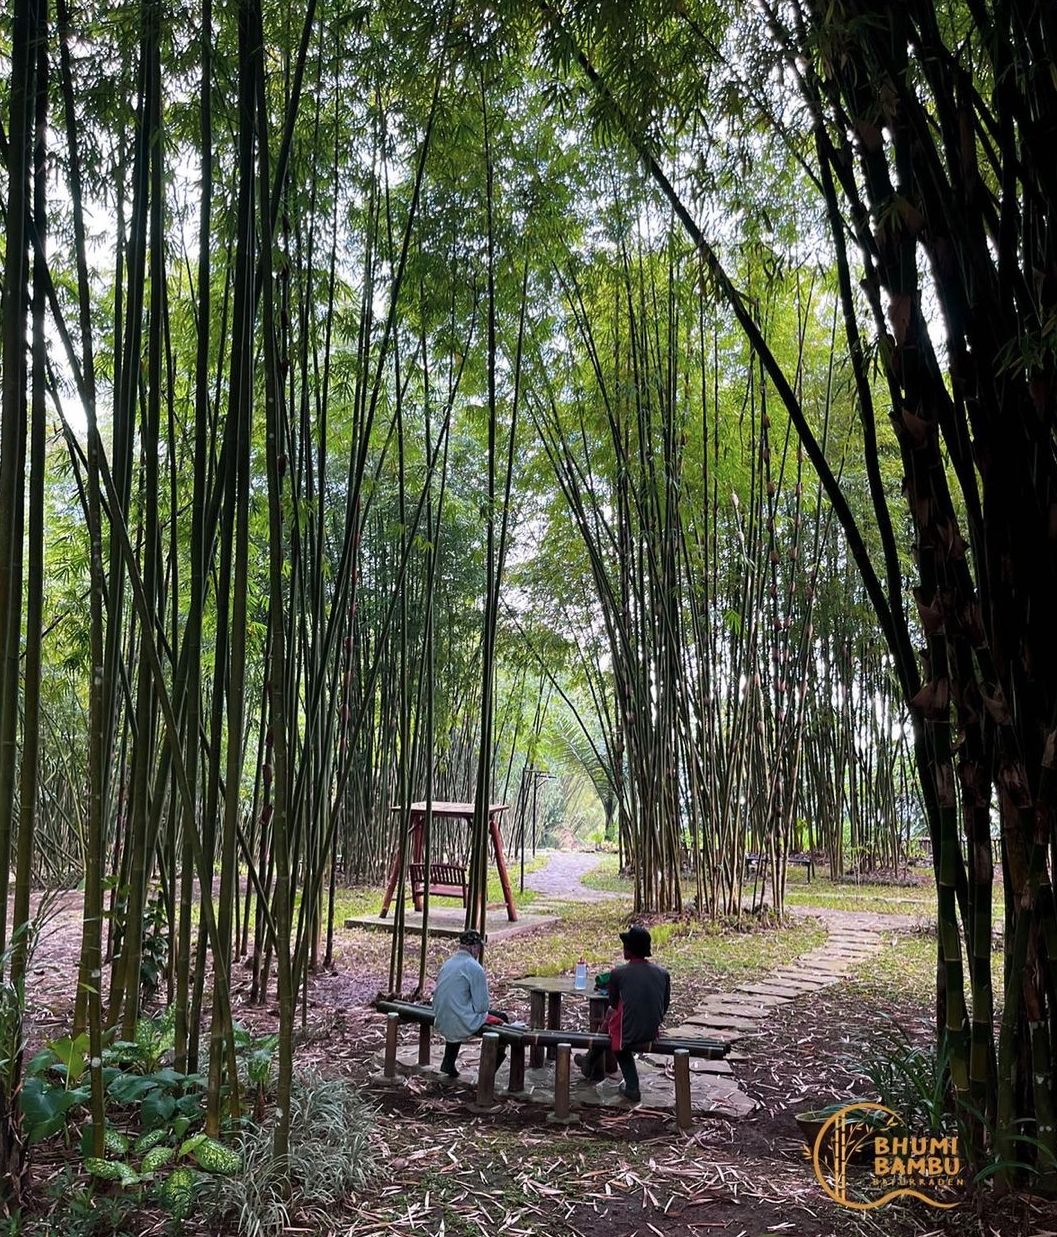 Bhumi Bambu, Baturraden lokasi wisata lengkap, bisa camping, makan dan bermain.*